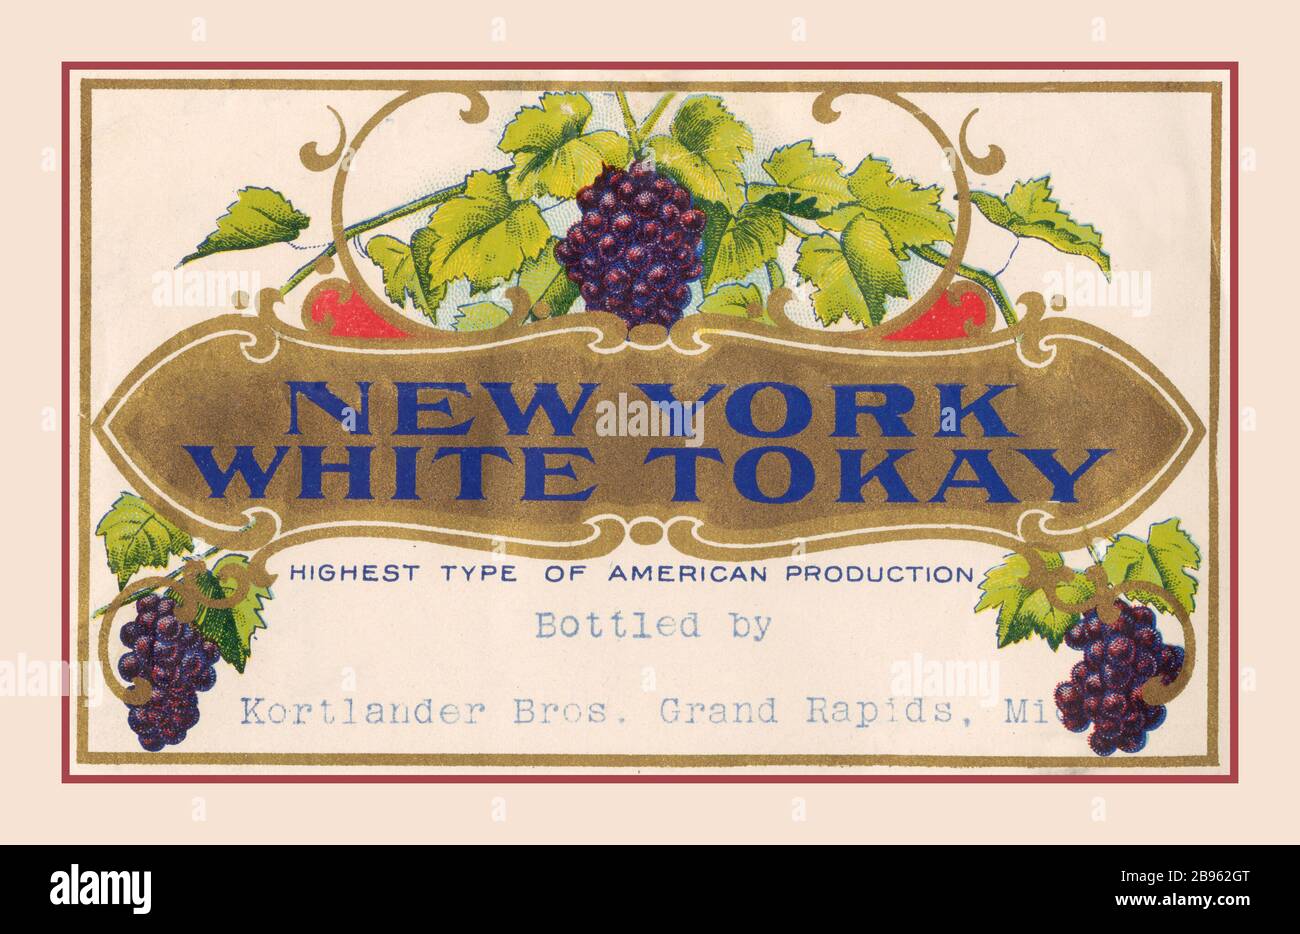 WHITE TOKAY New York White Tokay décoré label de vin Date d'archivage: CA. 1900-1925 chanson de la vigne : une histoire du vin. Étiquettes de bouteilles en bouteille en bouteille de Korlander Bros. Grand Rapids Missouri USA Banque D'Images